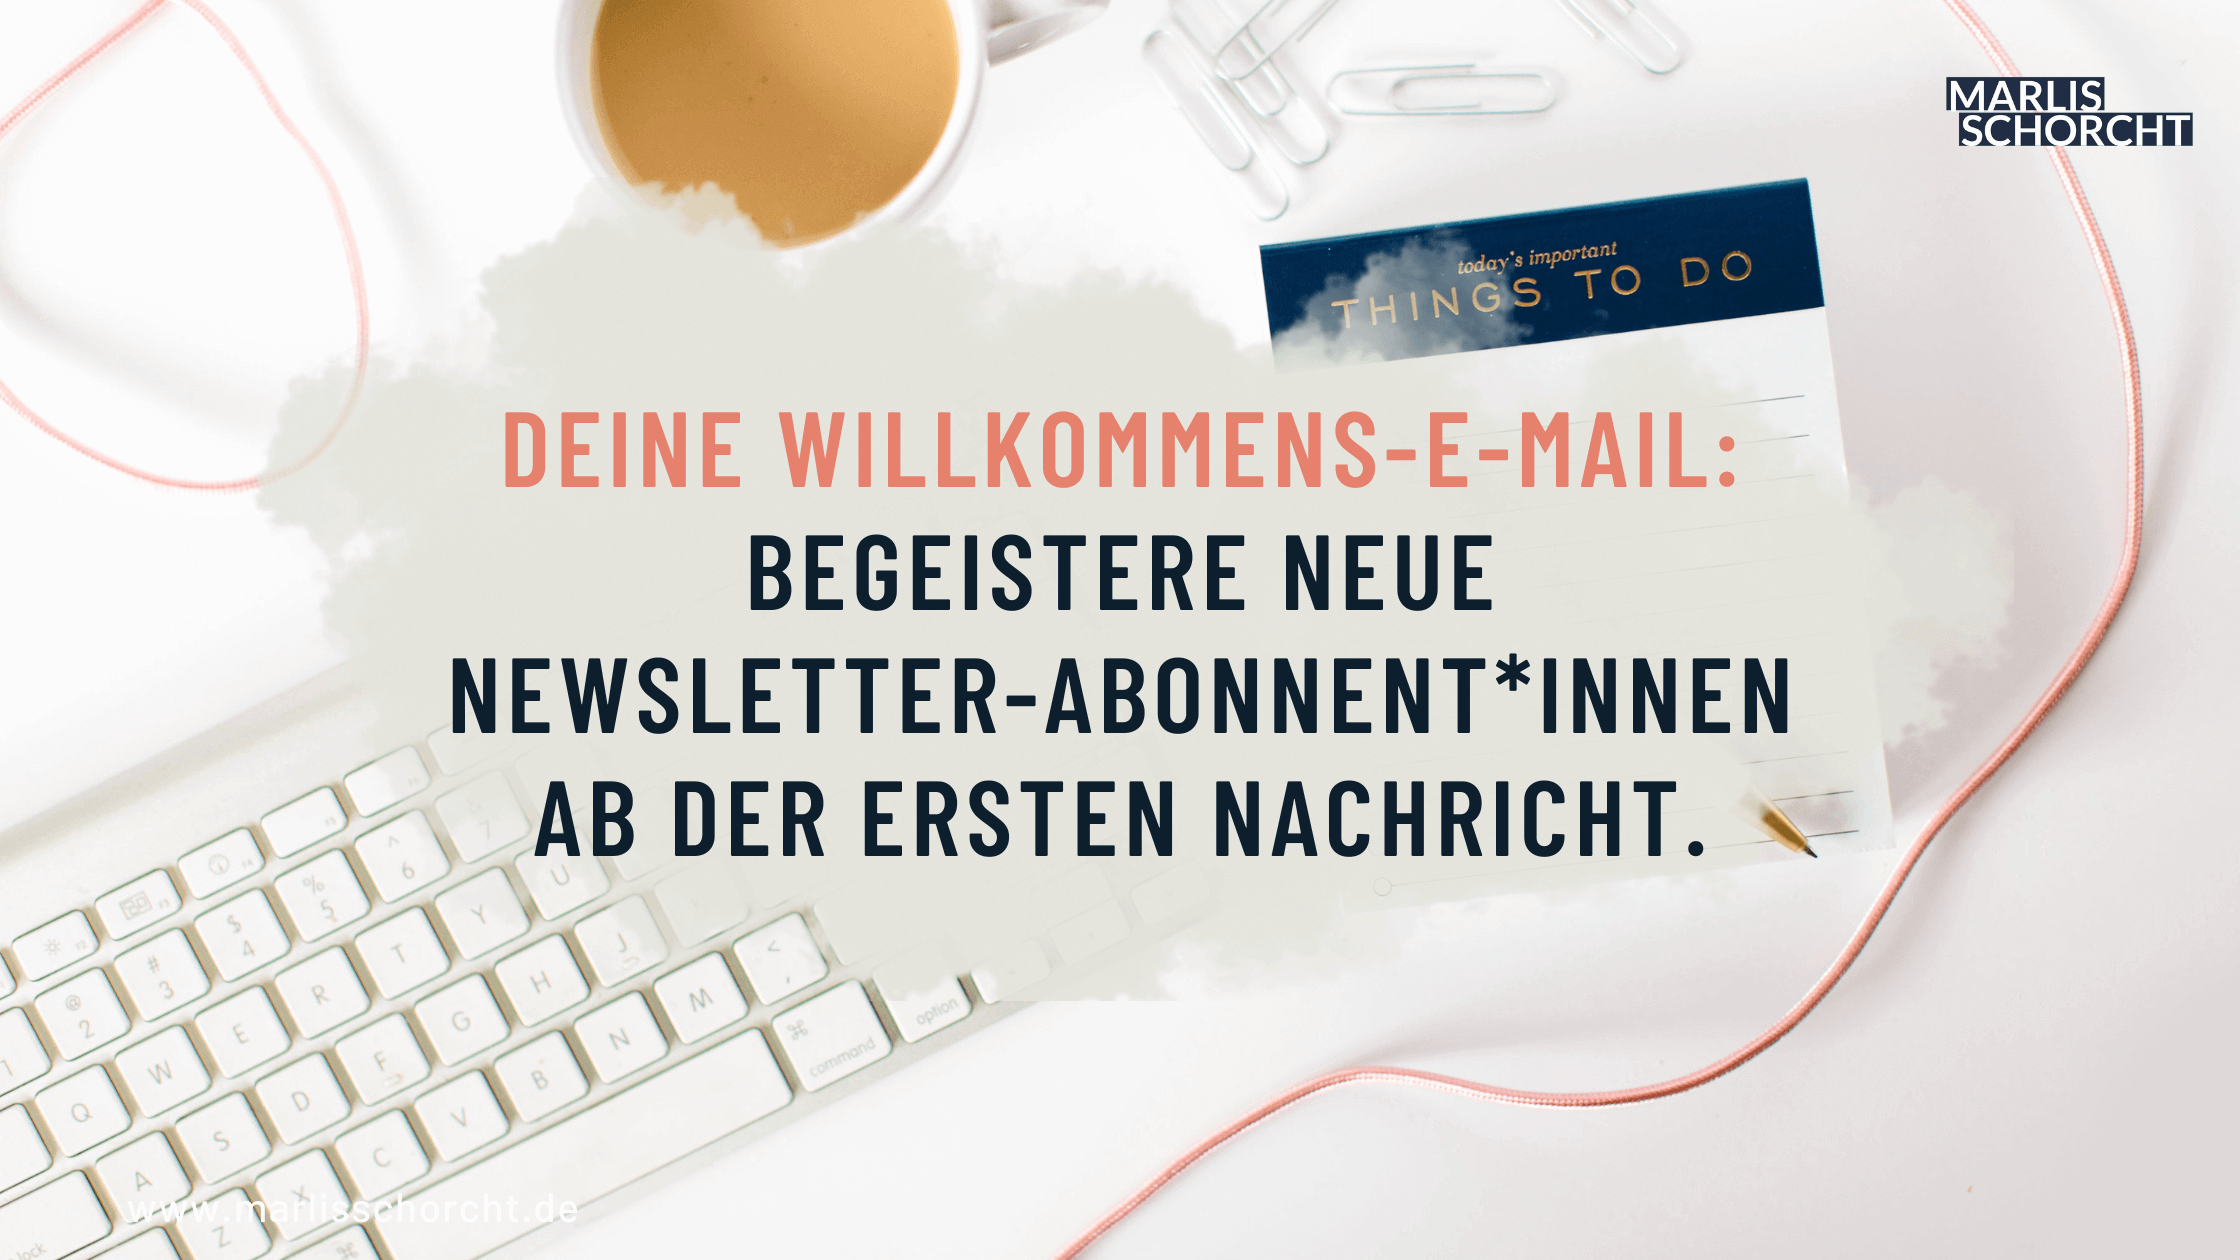 tastatur, kaffeetasse und notizbuch, darauf steht "deine willkommens-e-mail: begeistere deine newsletter abonnent*innen ab der ersten nachricht"